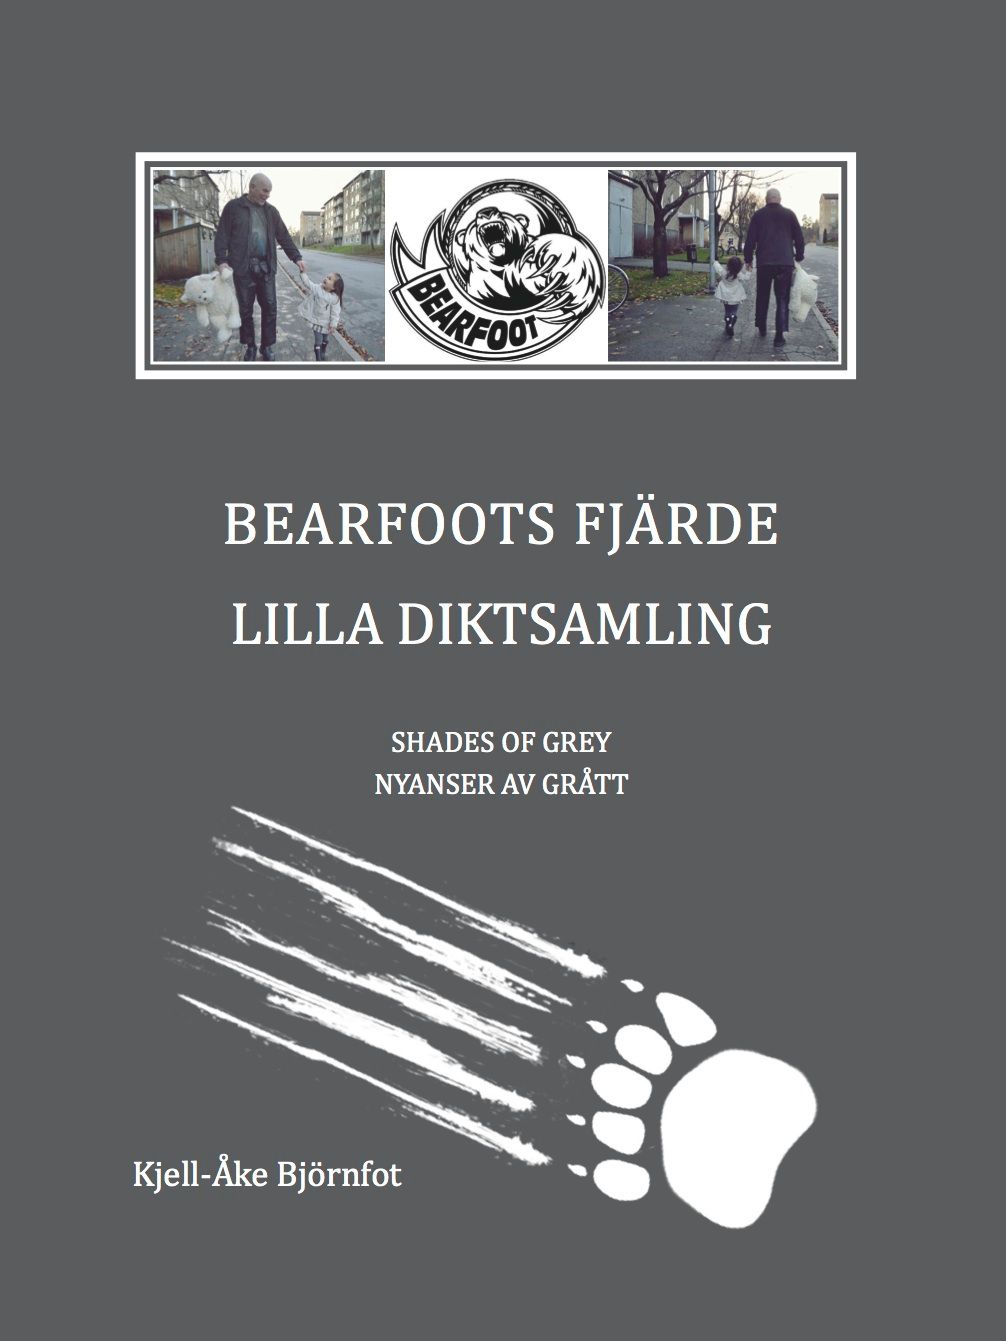 BEARFOOTS FJÄRDE, eBook by Kjell-Åke Björnfot